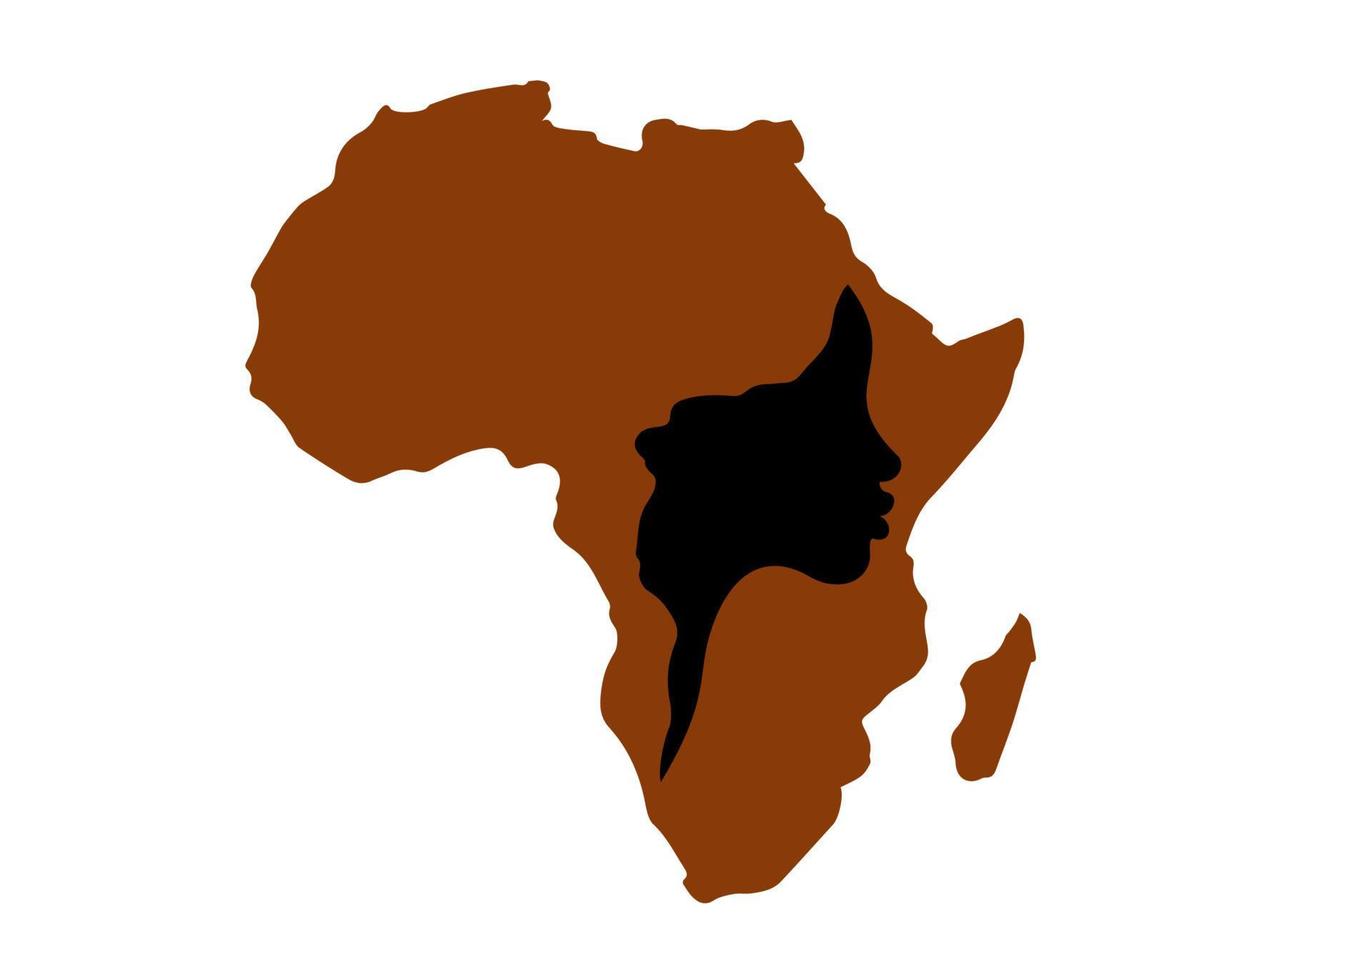 concept van Afrikaanse vrouw, gezicht profiel silhouet met tulband in de vorm van een kaart van Afrika. kleurrijke afro print tribal logo ontwerpsjabloon. vectorillustratie geïsoleerd op een witte achtergrond vector